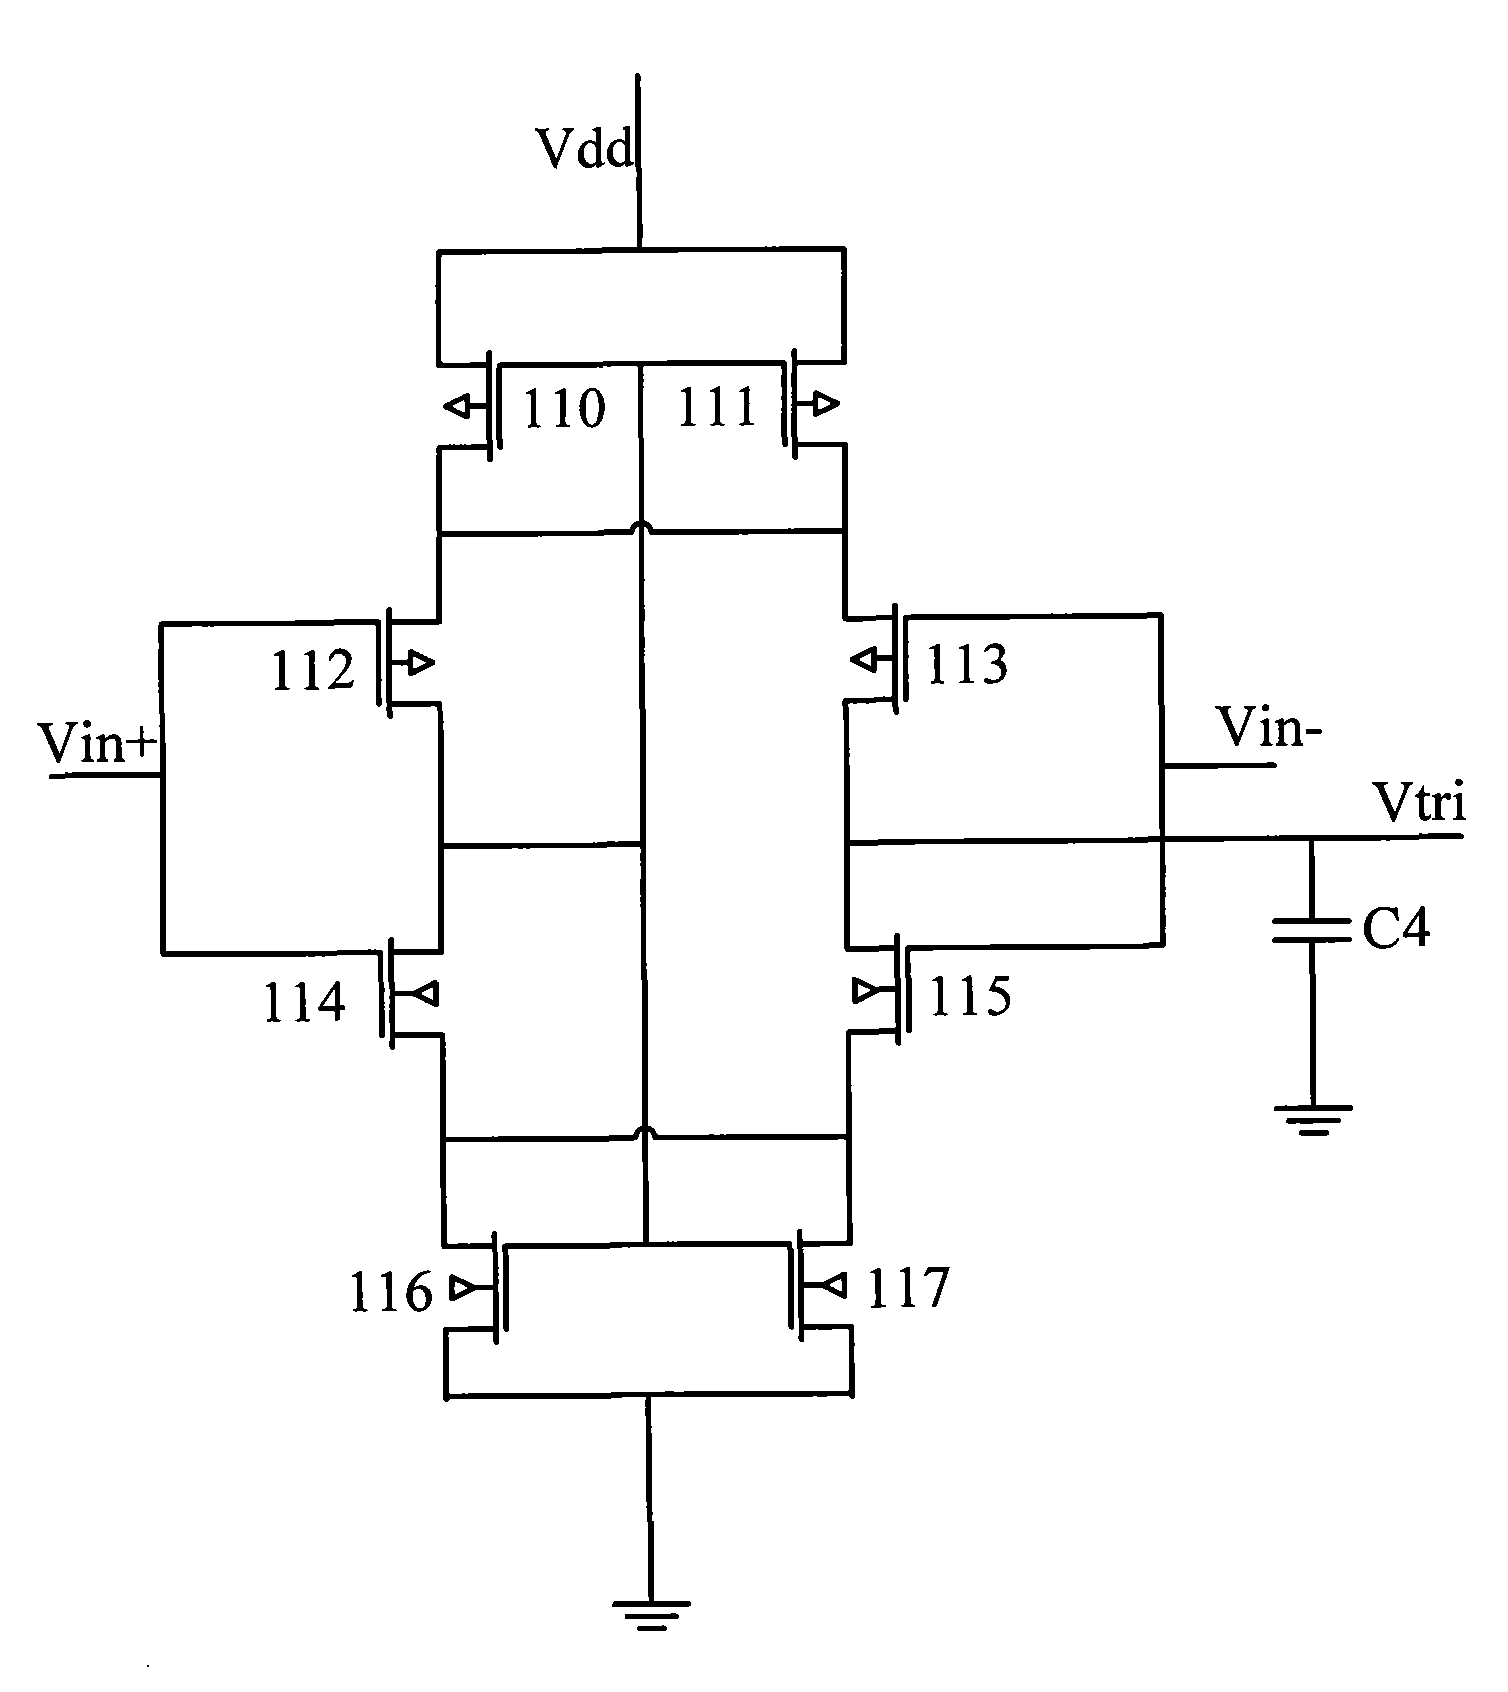 Analog sampling switch and analog-to-digital converter